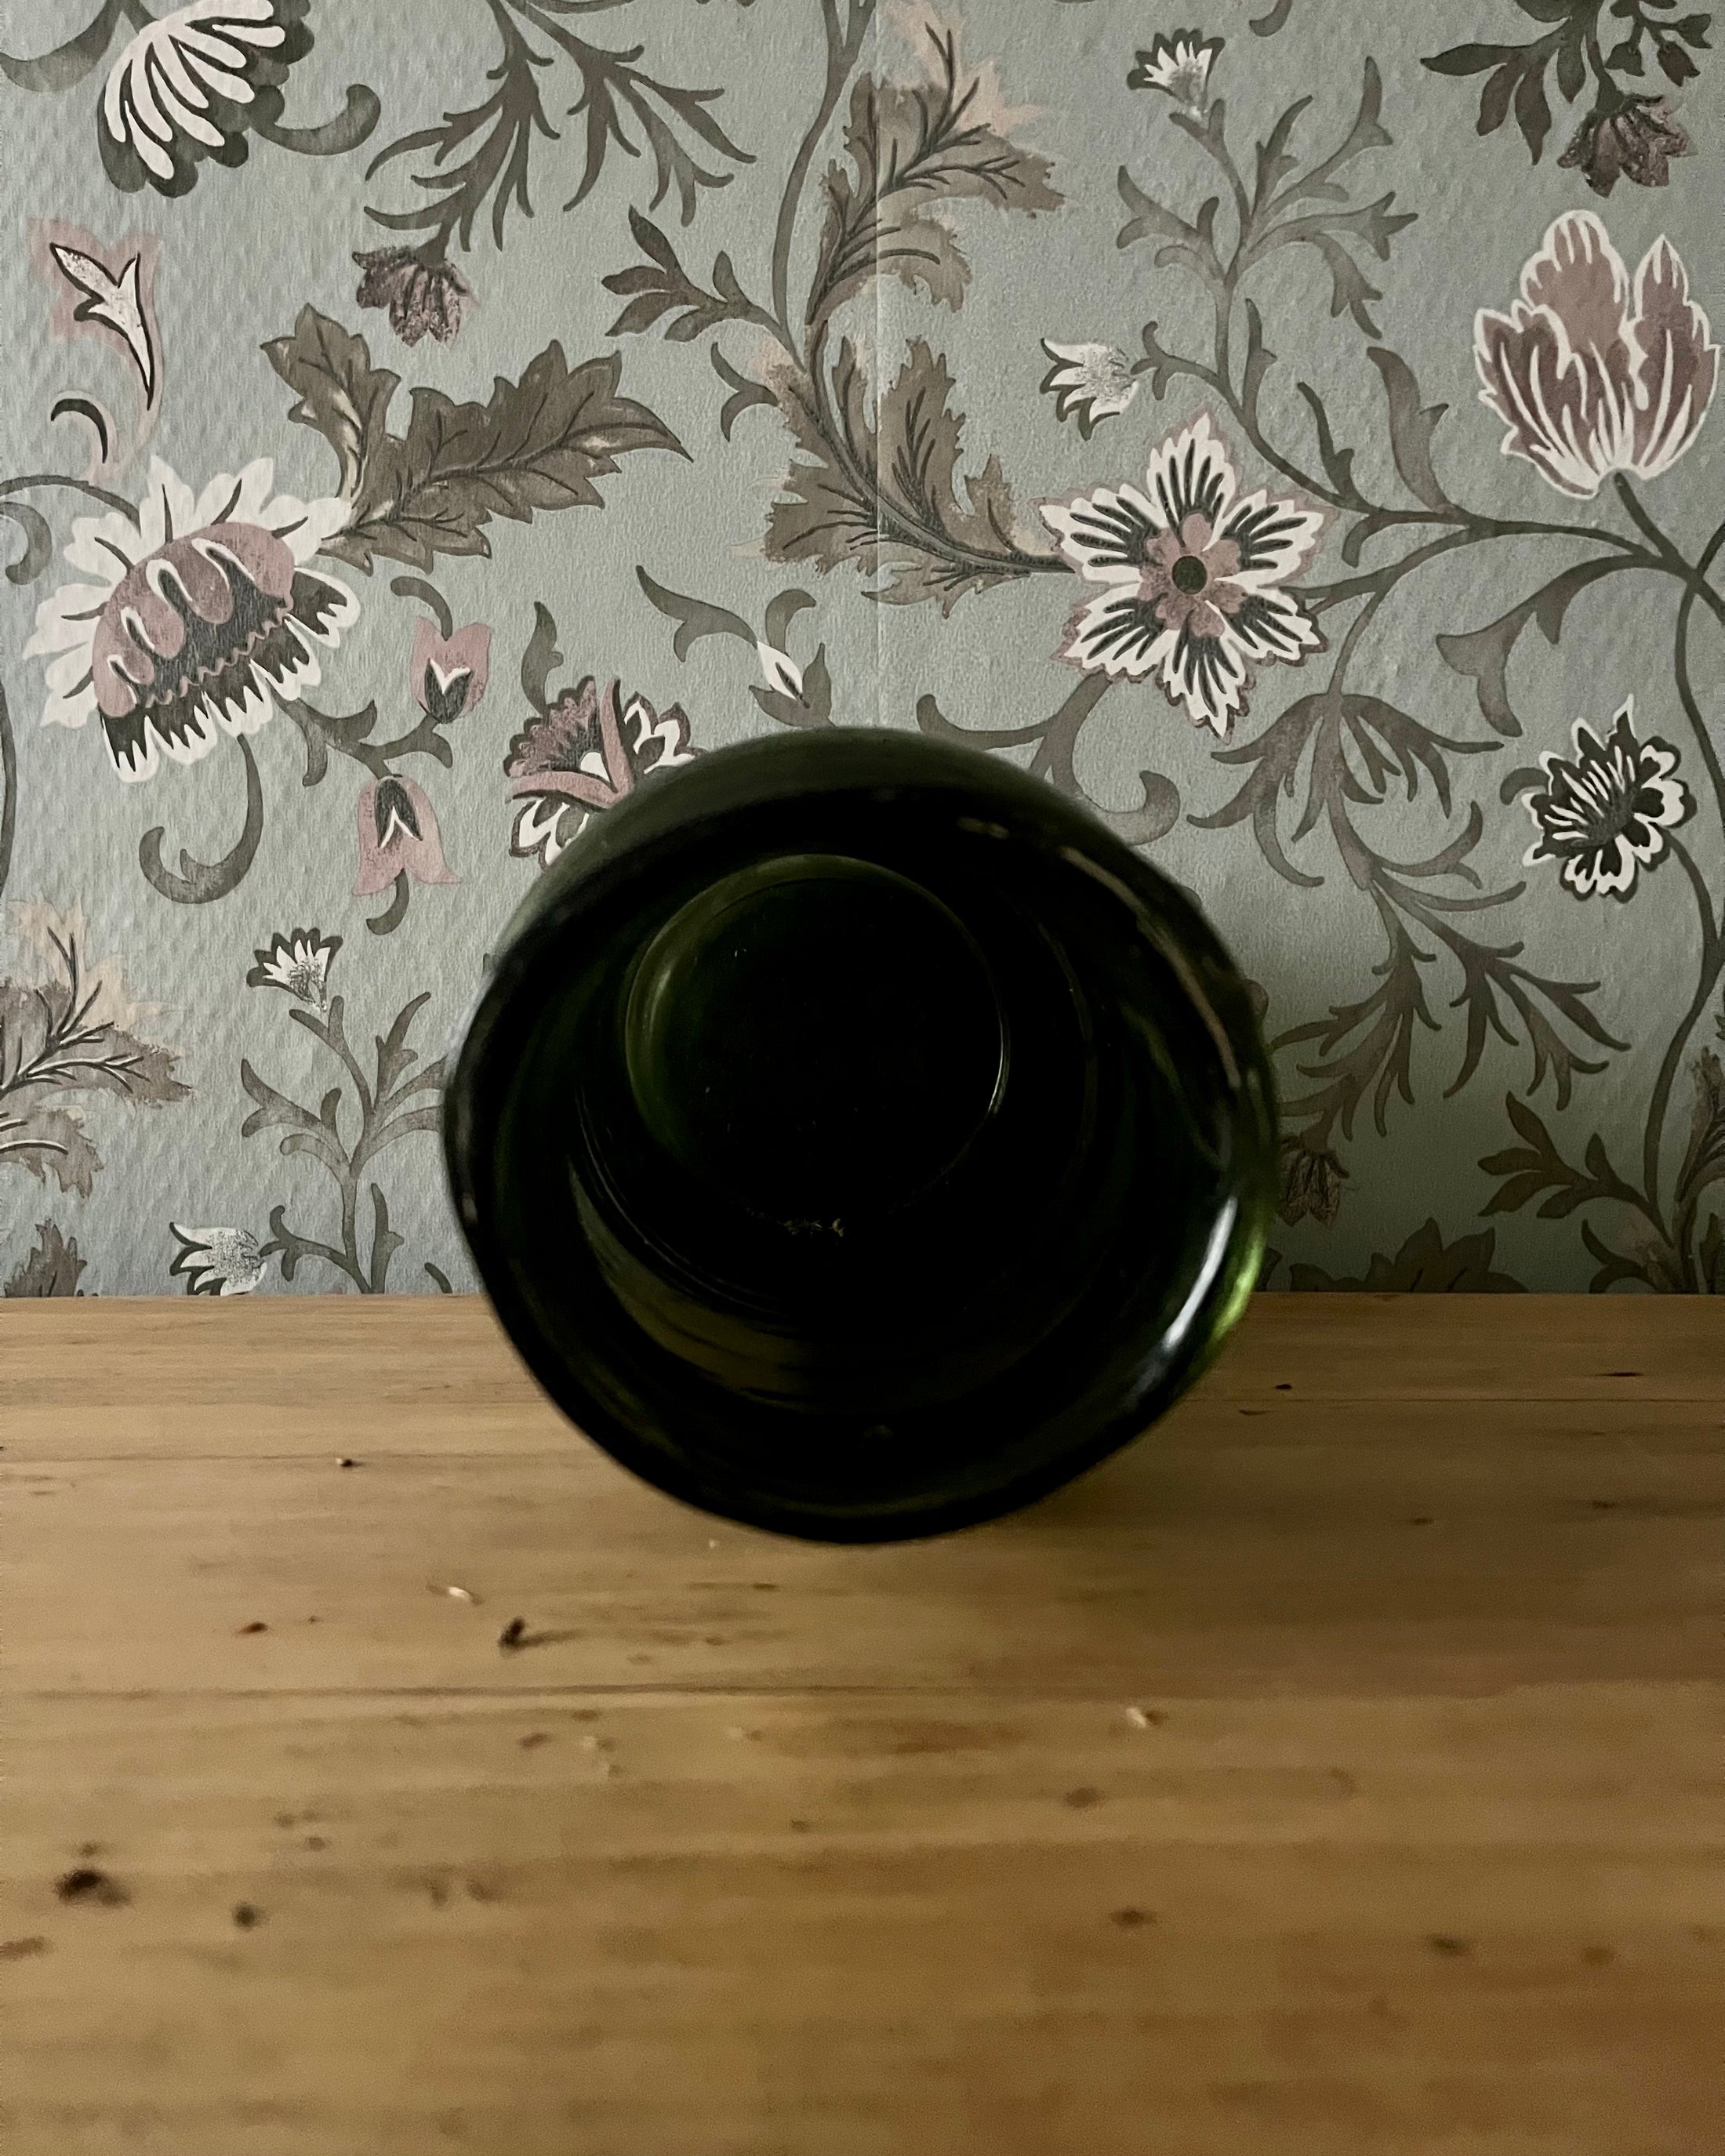 Vase en verre vert bouteille